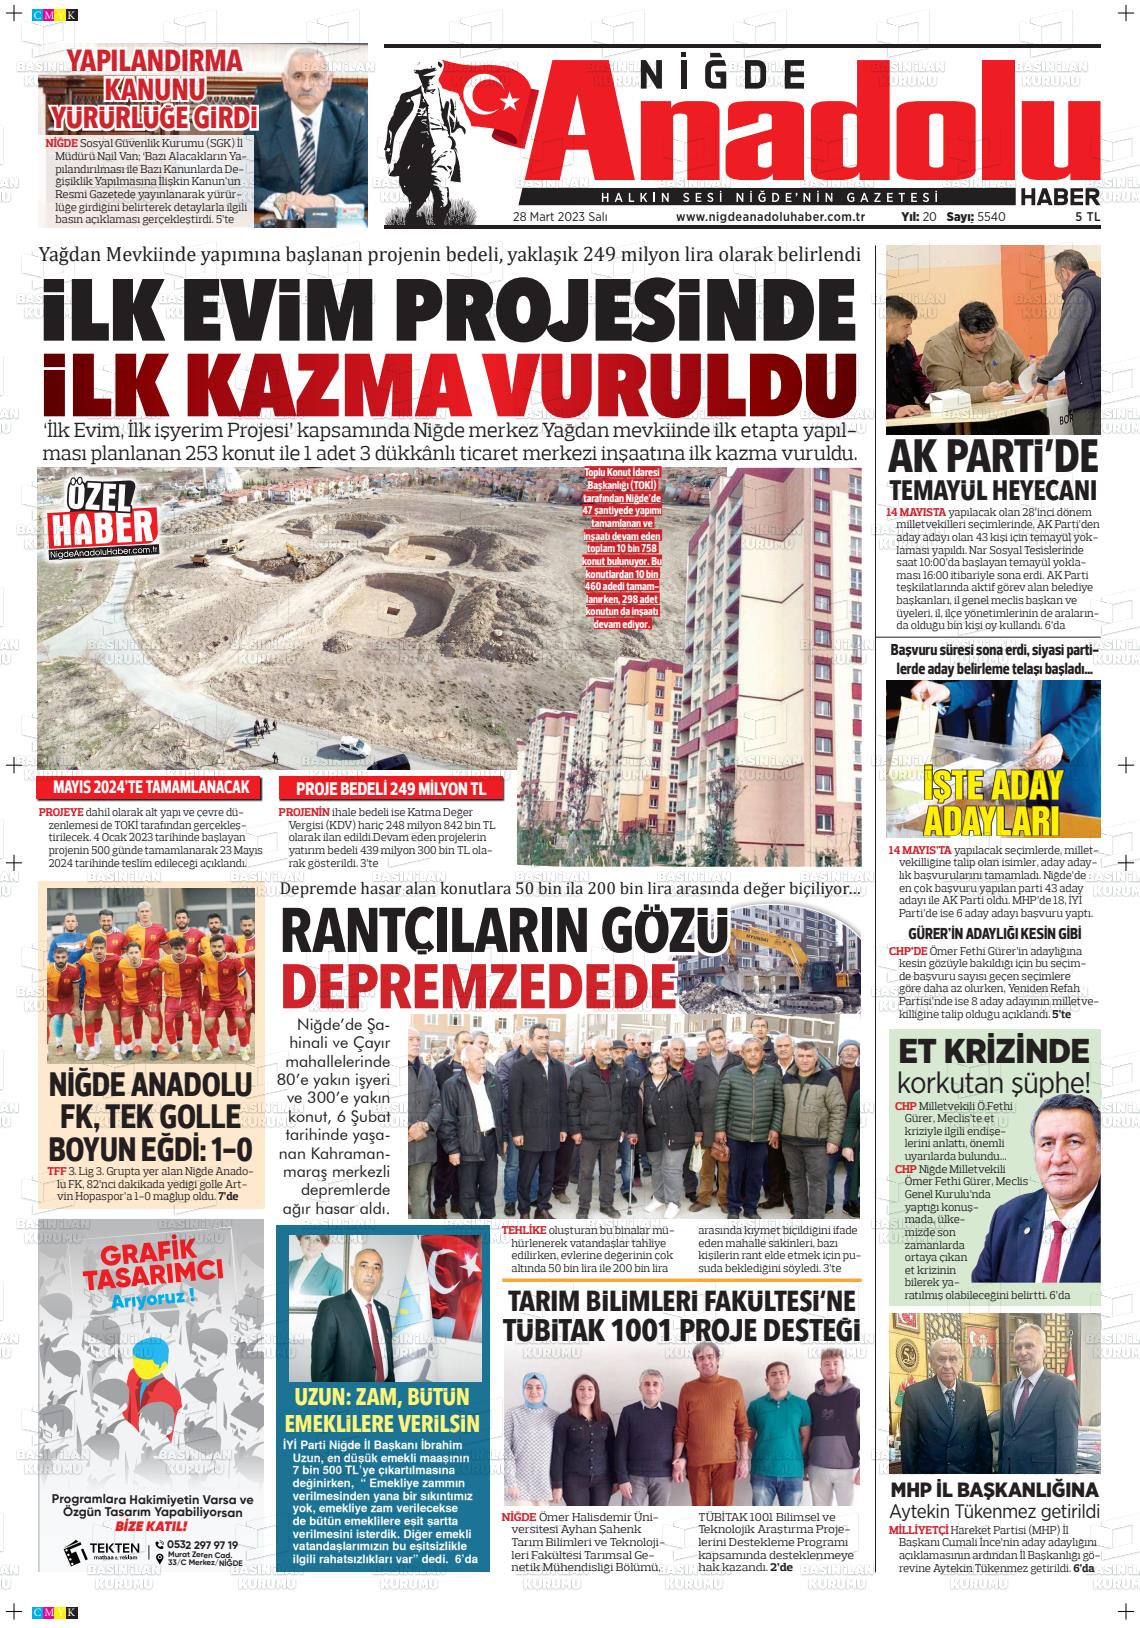 28 Mart 2023 Niğde Anadolu Haber Gazete Manşeti